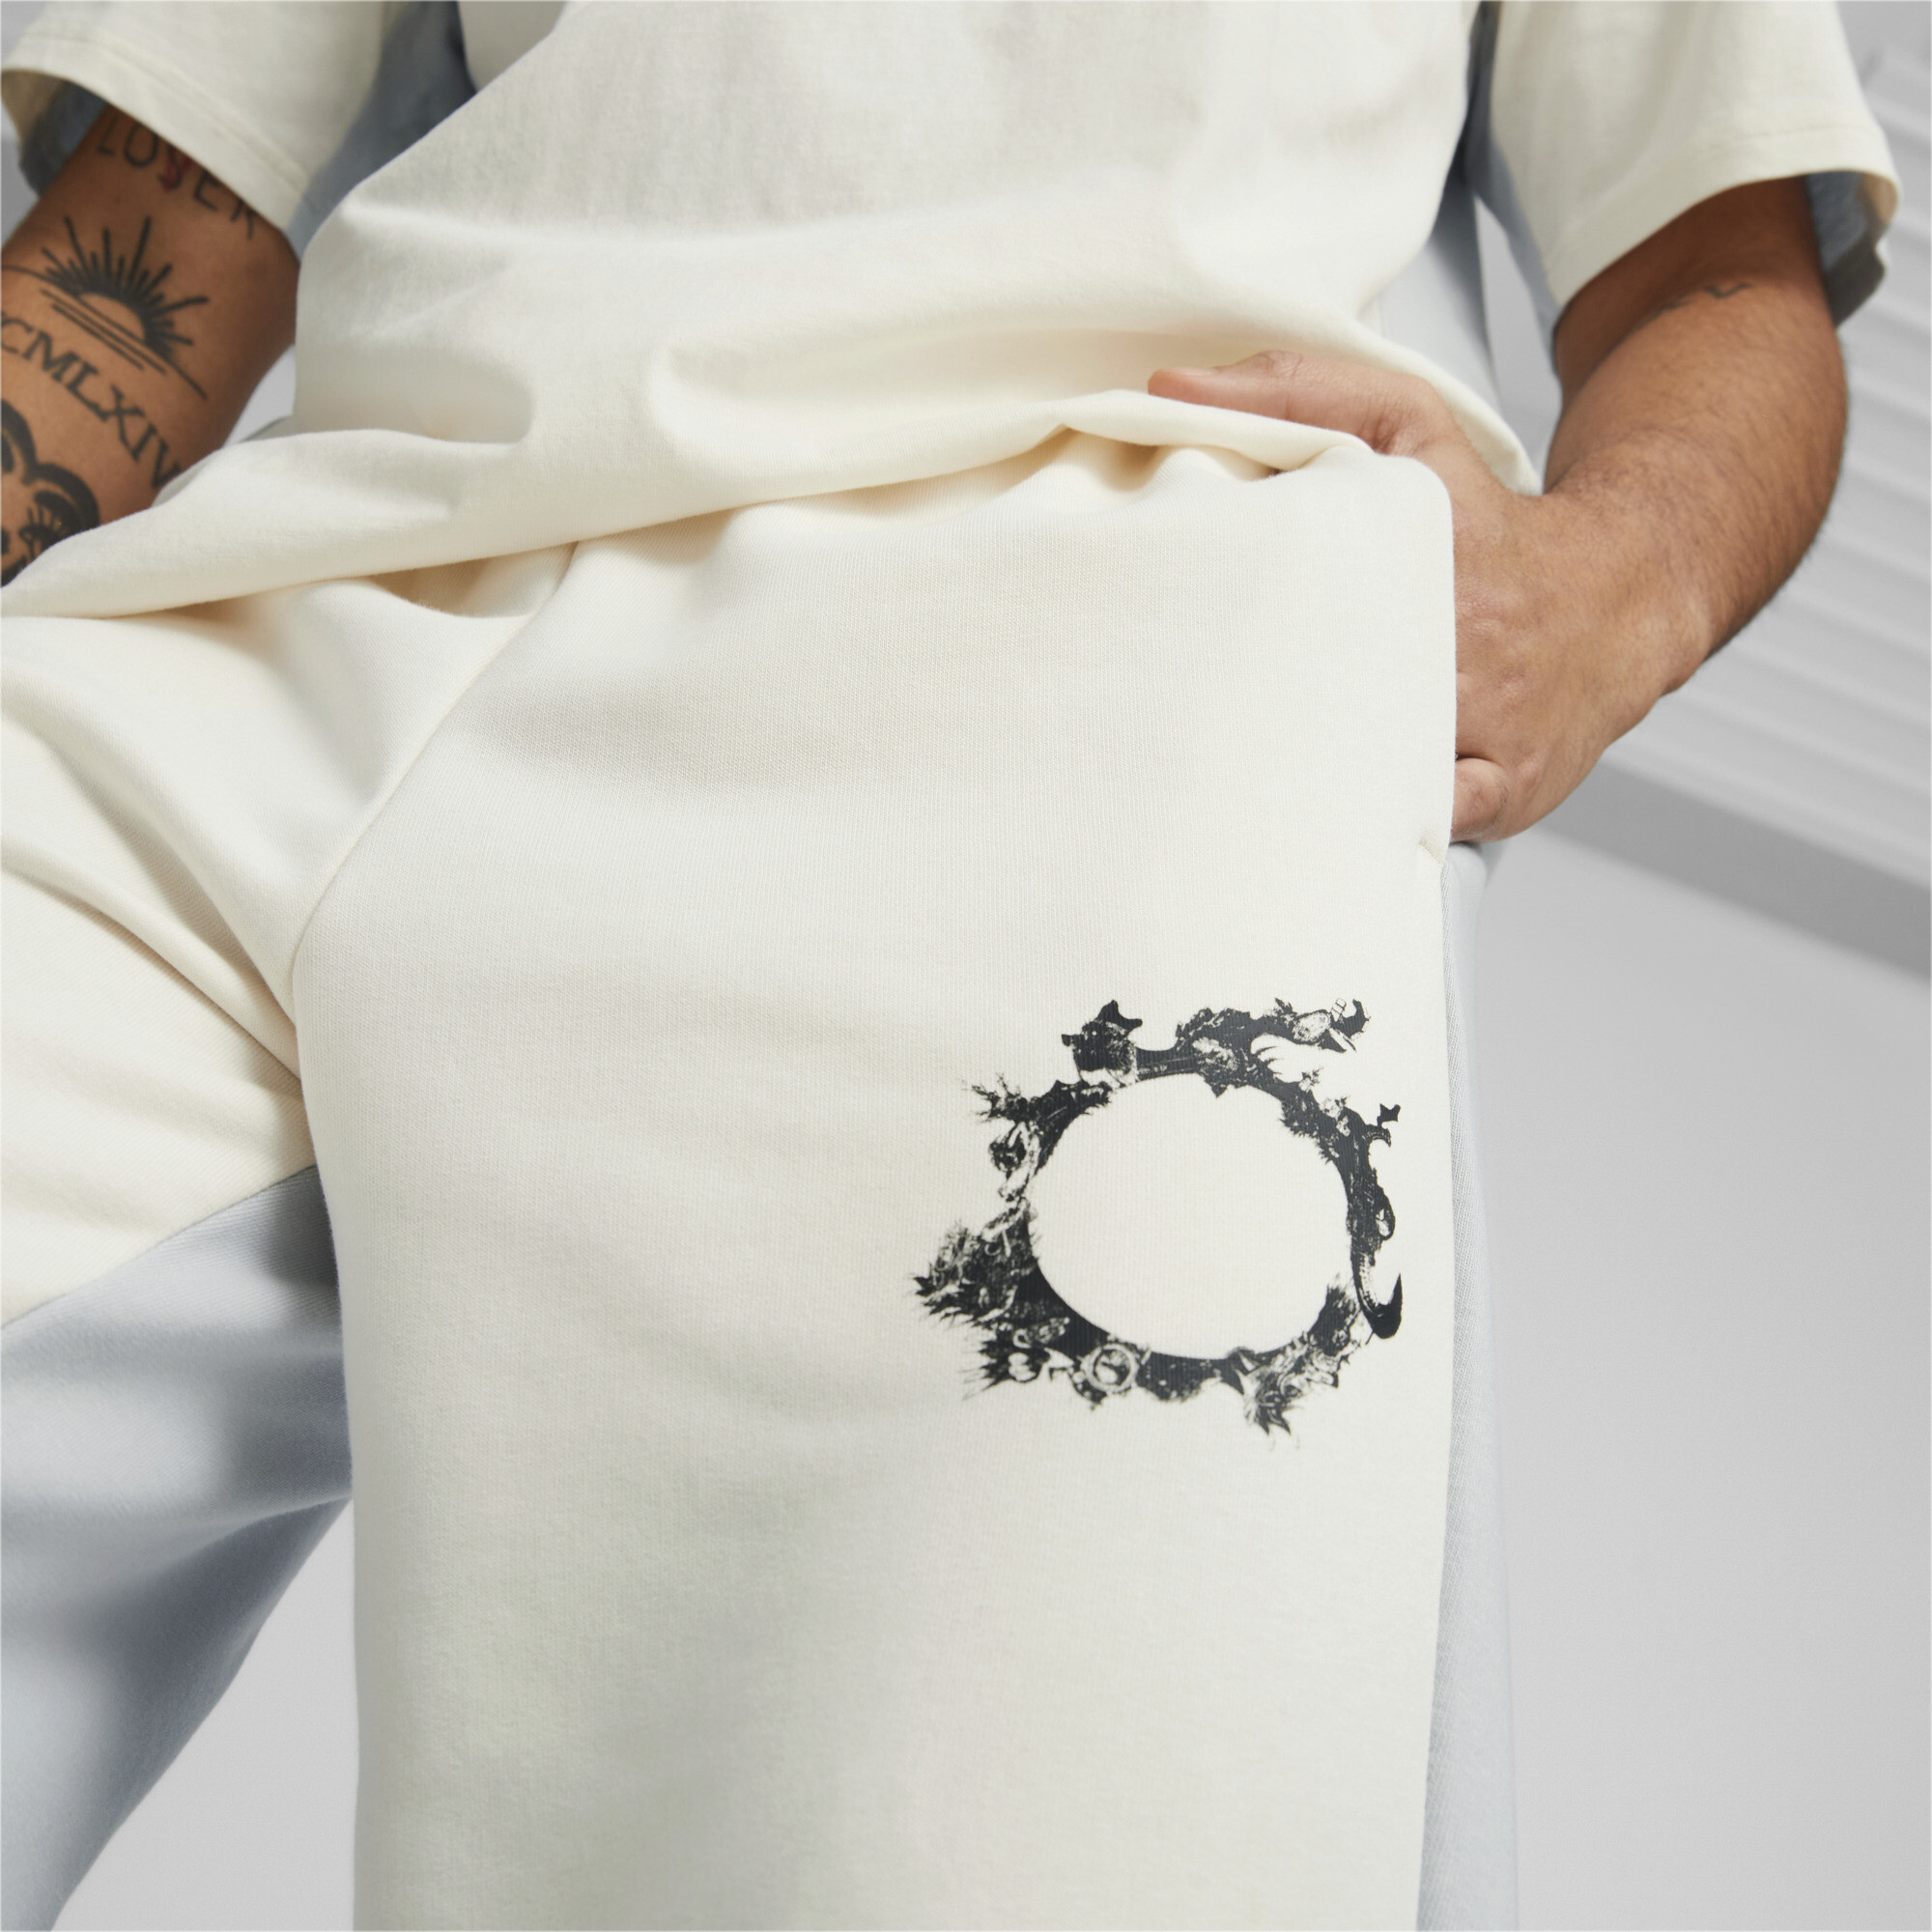 Men's PUMA X FINAL FANTASY XIV Sweatpants In White, Size 2XL